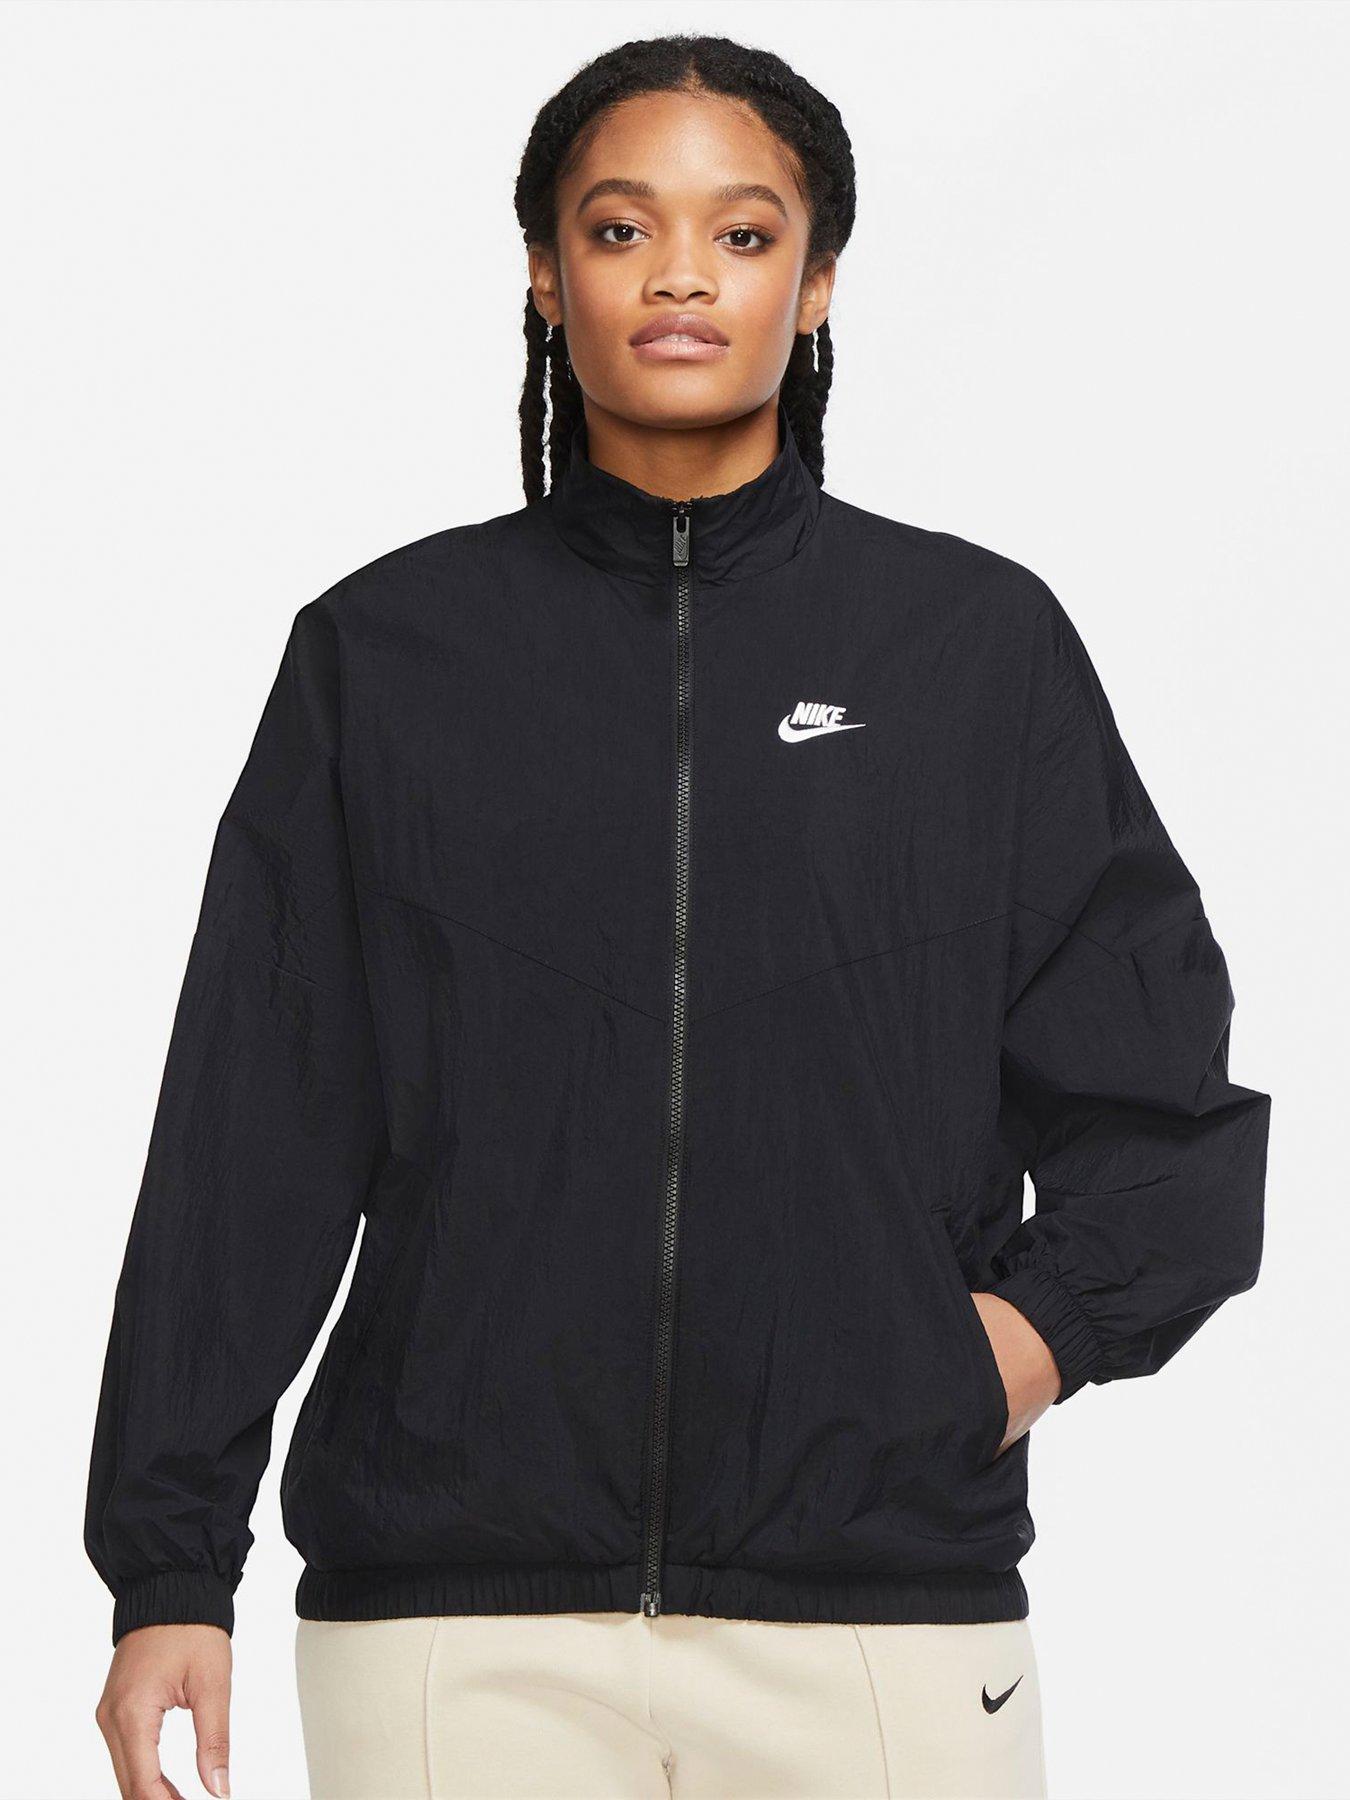 Getand handelaar verkopen Nike | Coats & jackets | Women | Very Ireland